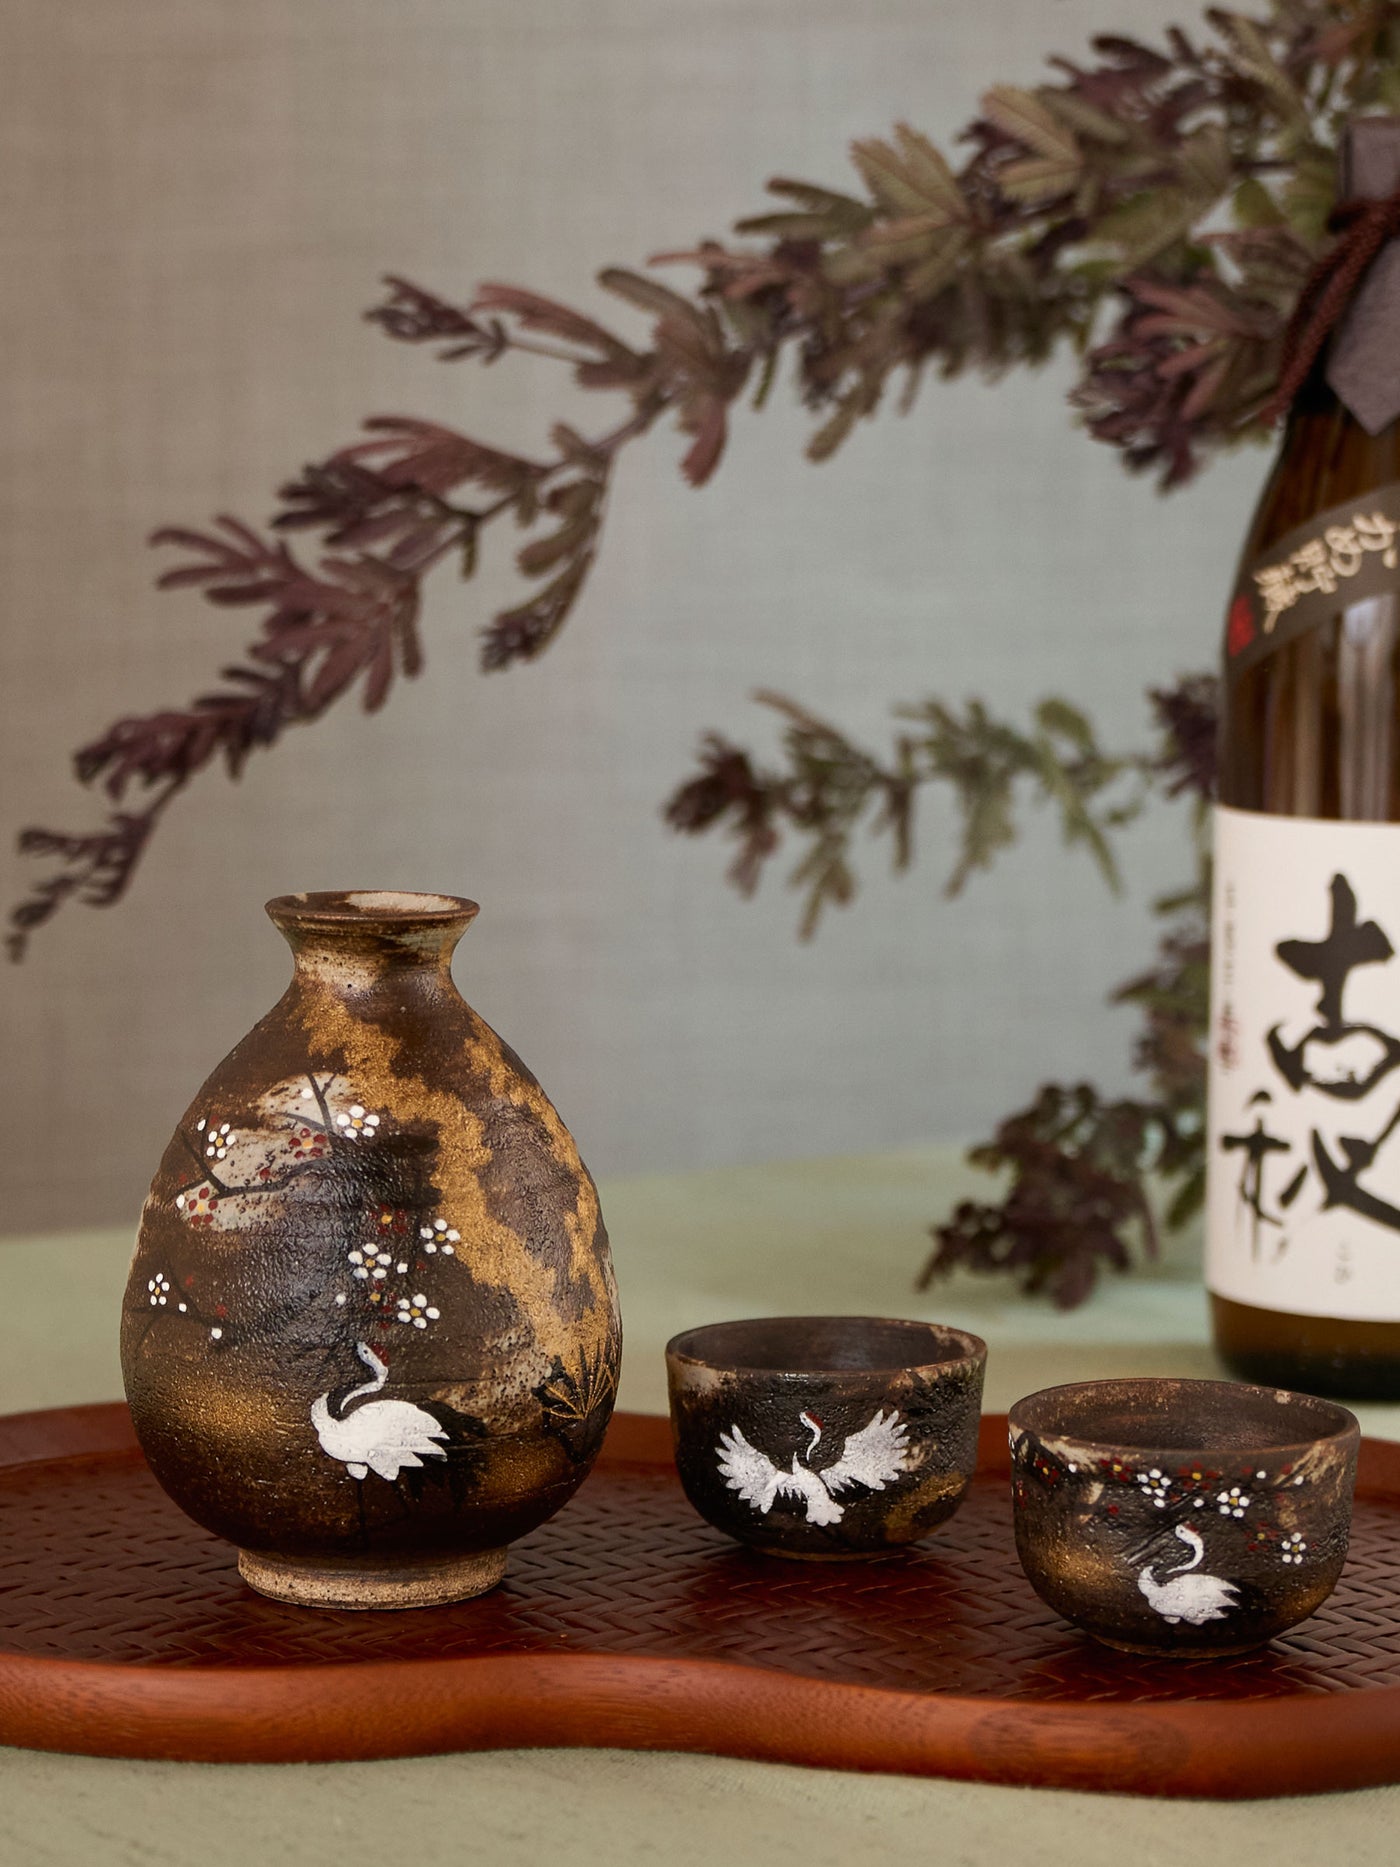 Crane Kyoto Ware Japanese Sake Set by Hachiman